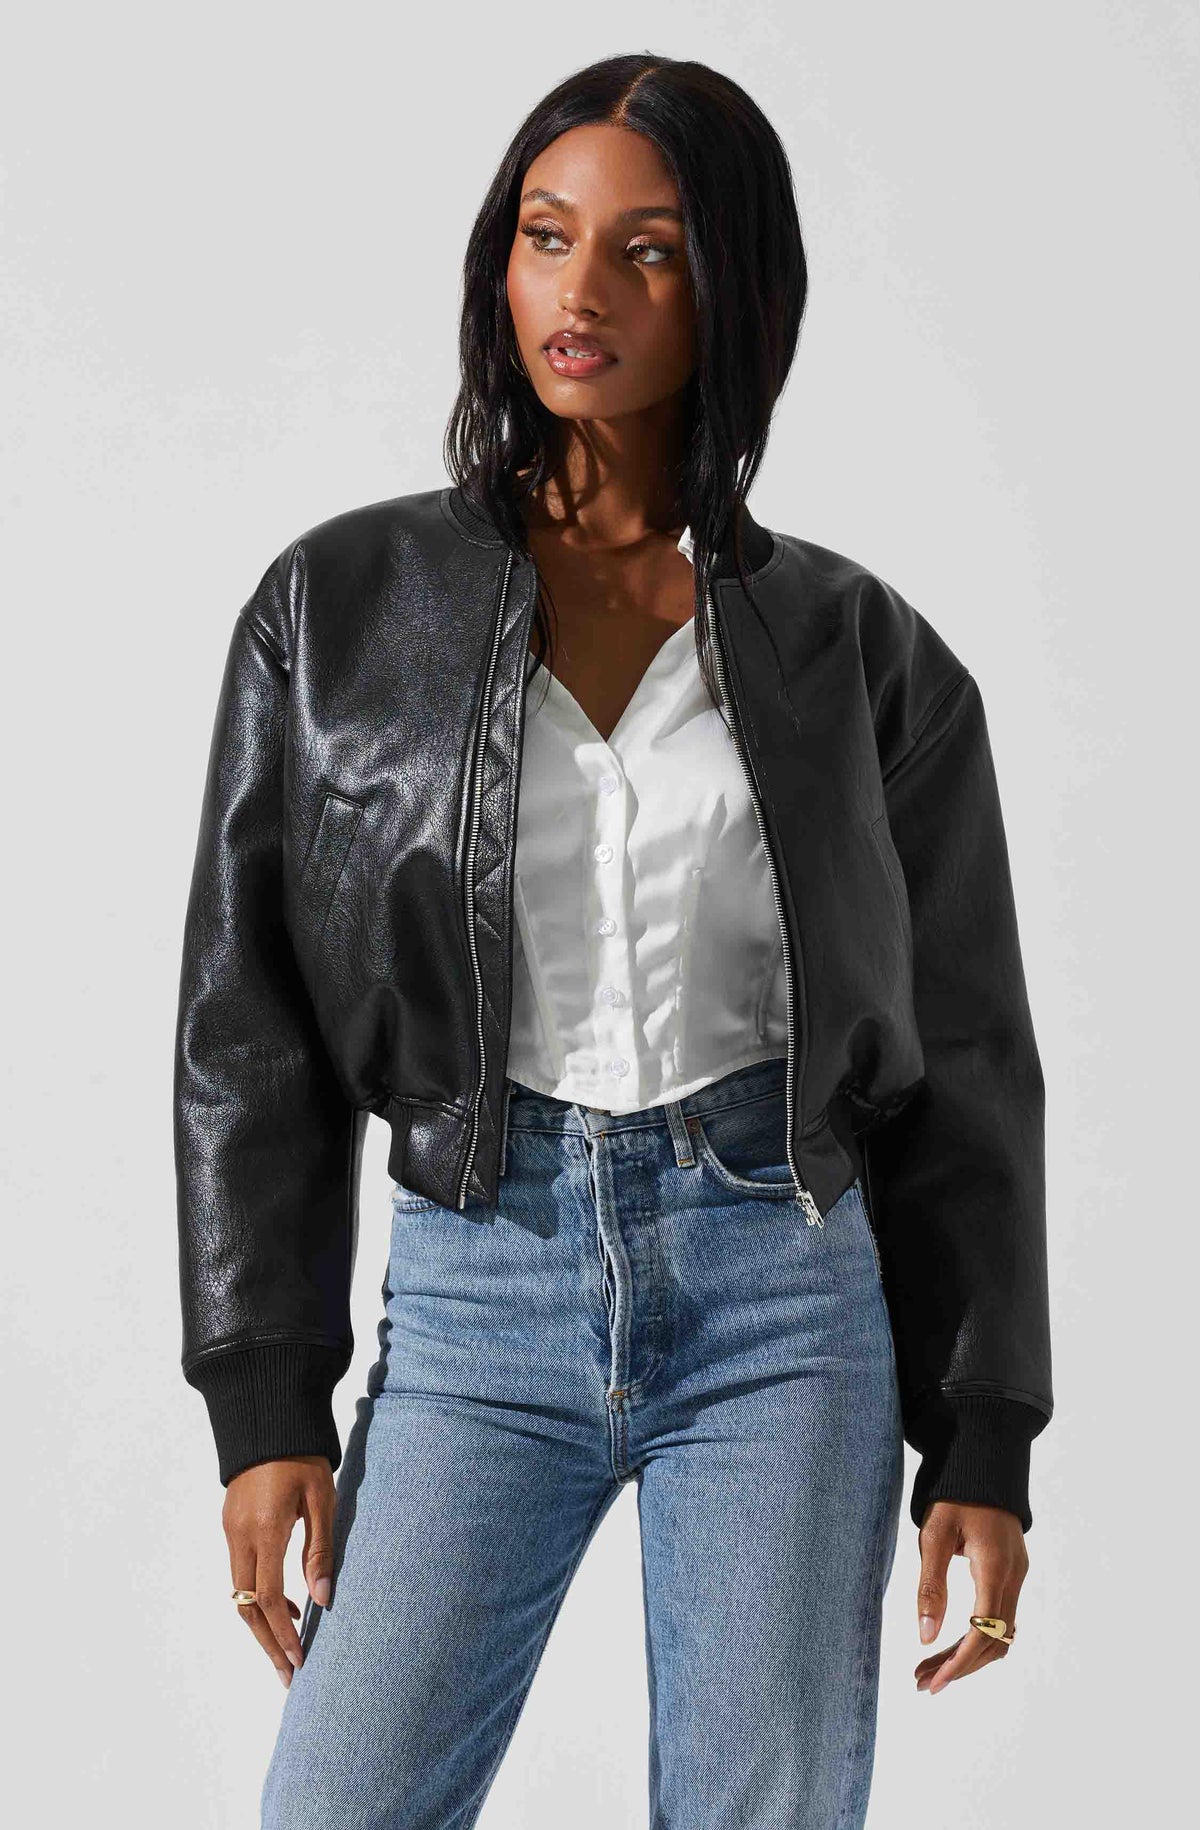 Leather crop bomber jacket (black)18500円でどうですか